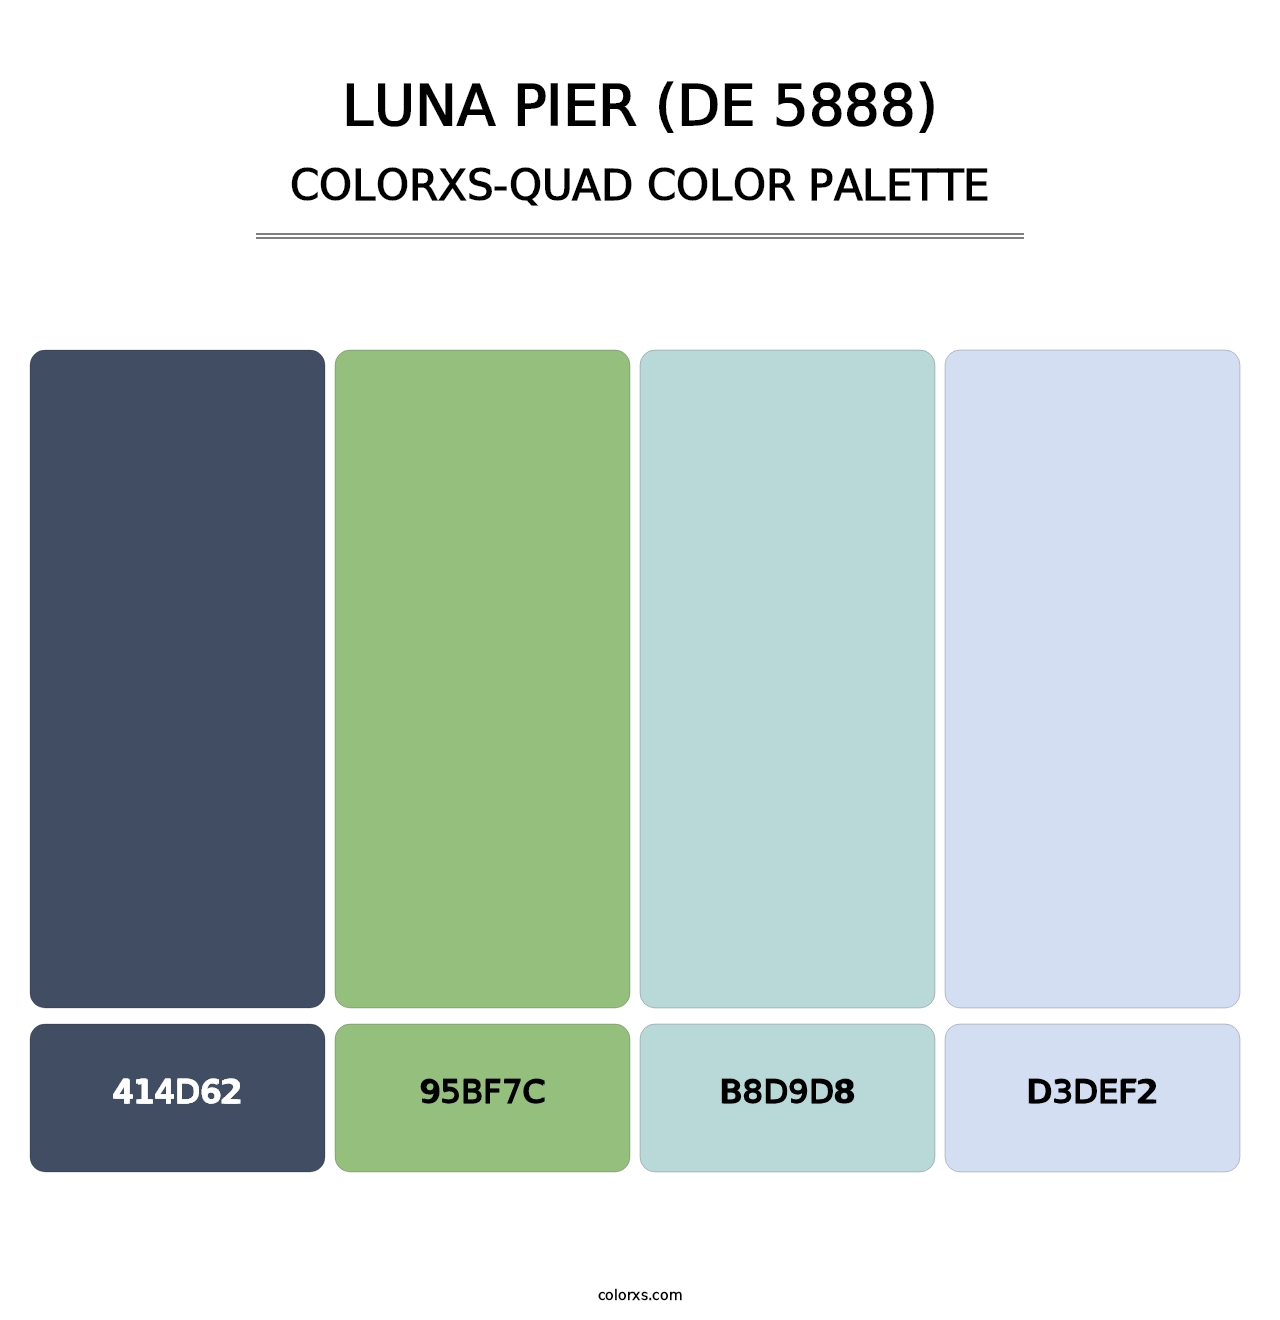 Luna Pier (DE 5888) - Colorxs Quad Palette